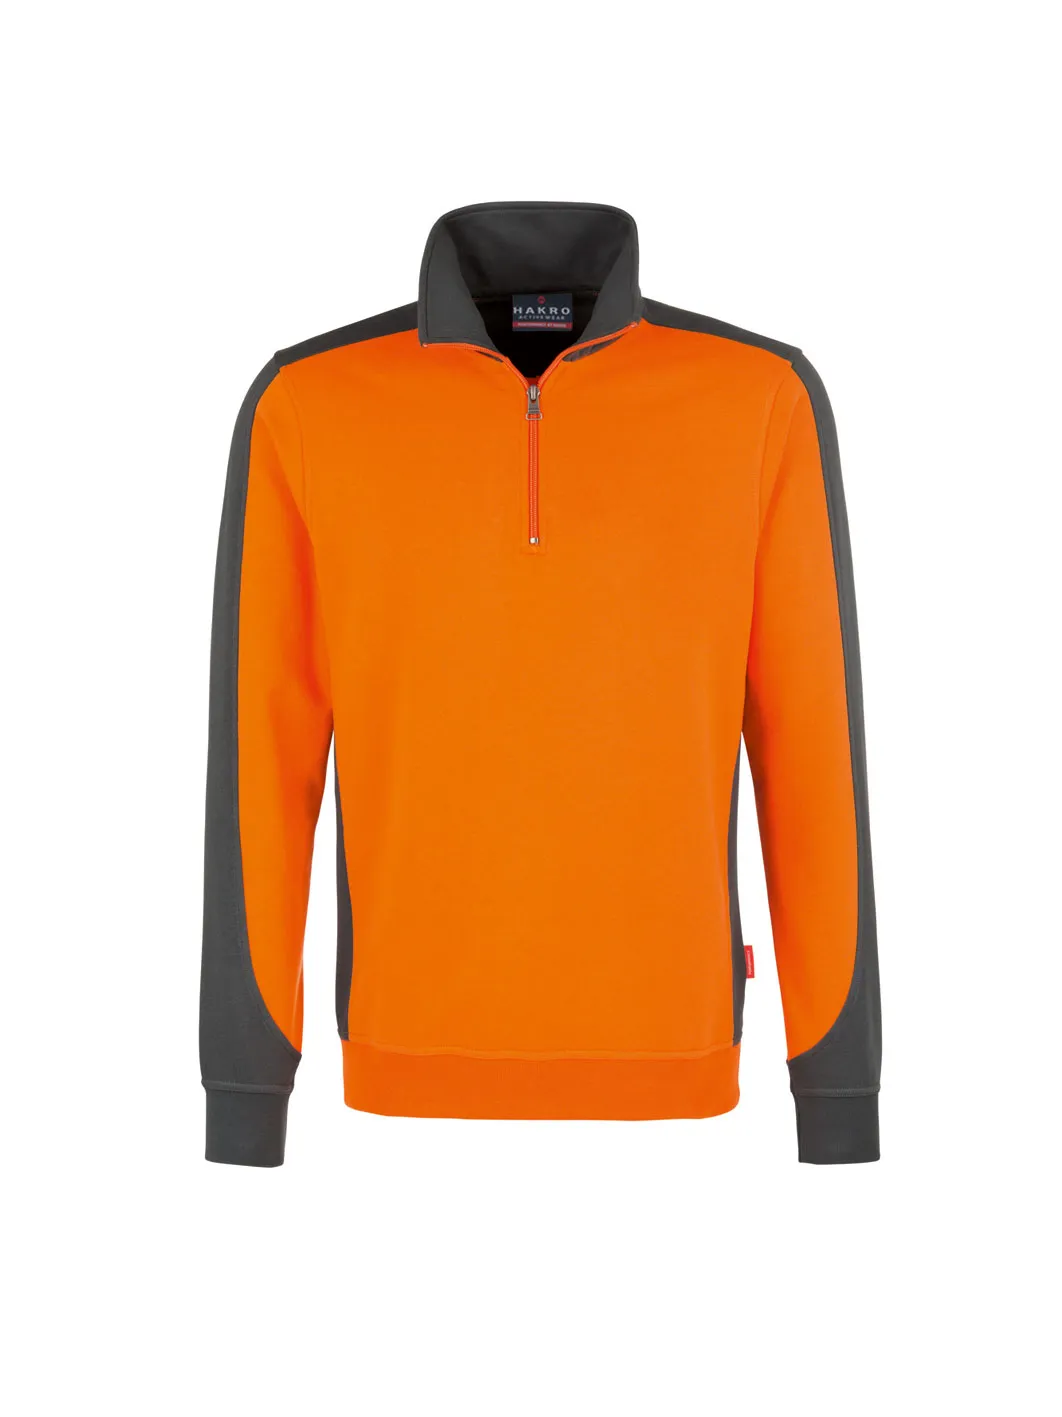 476, Zip-Sweatshirt | Hakro orange Mischgewebe, | | 6XL! Performance, Contrast bis 476-27-L L 50/50